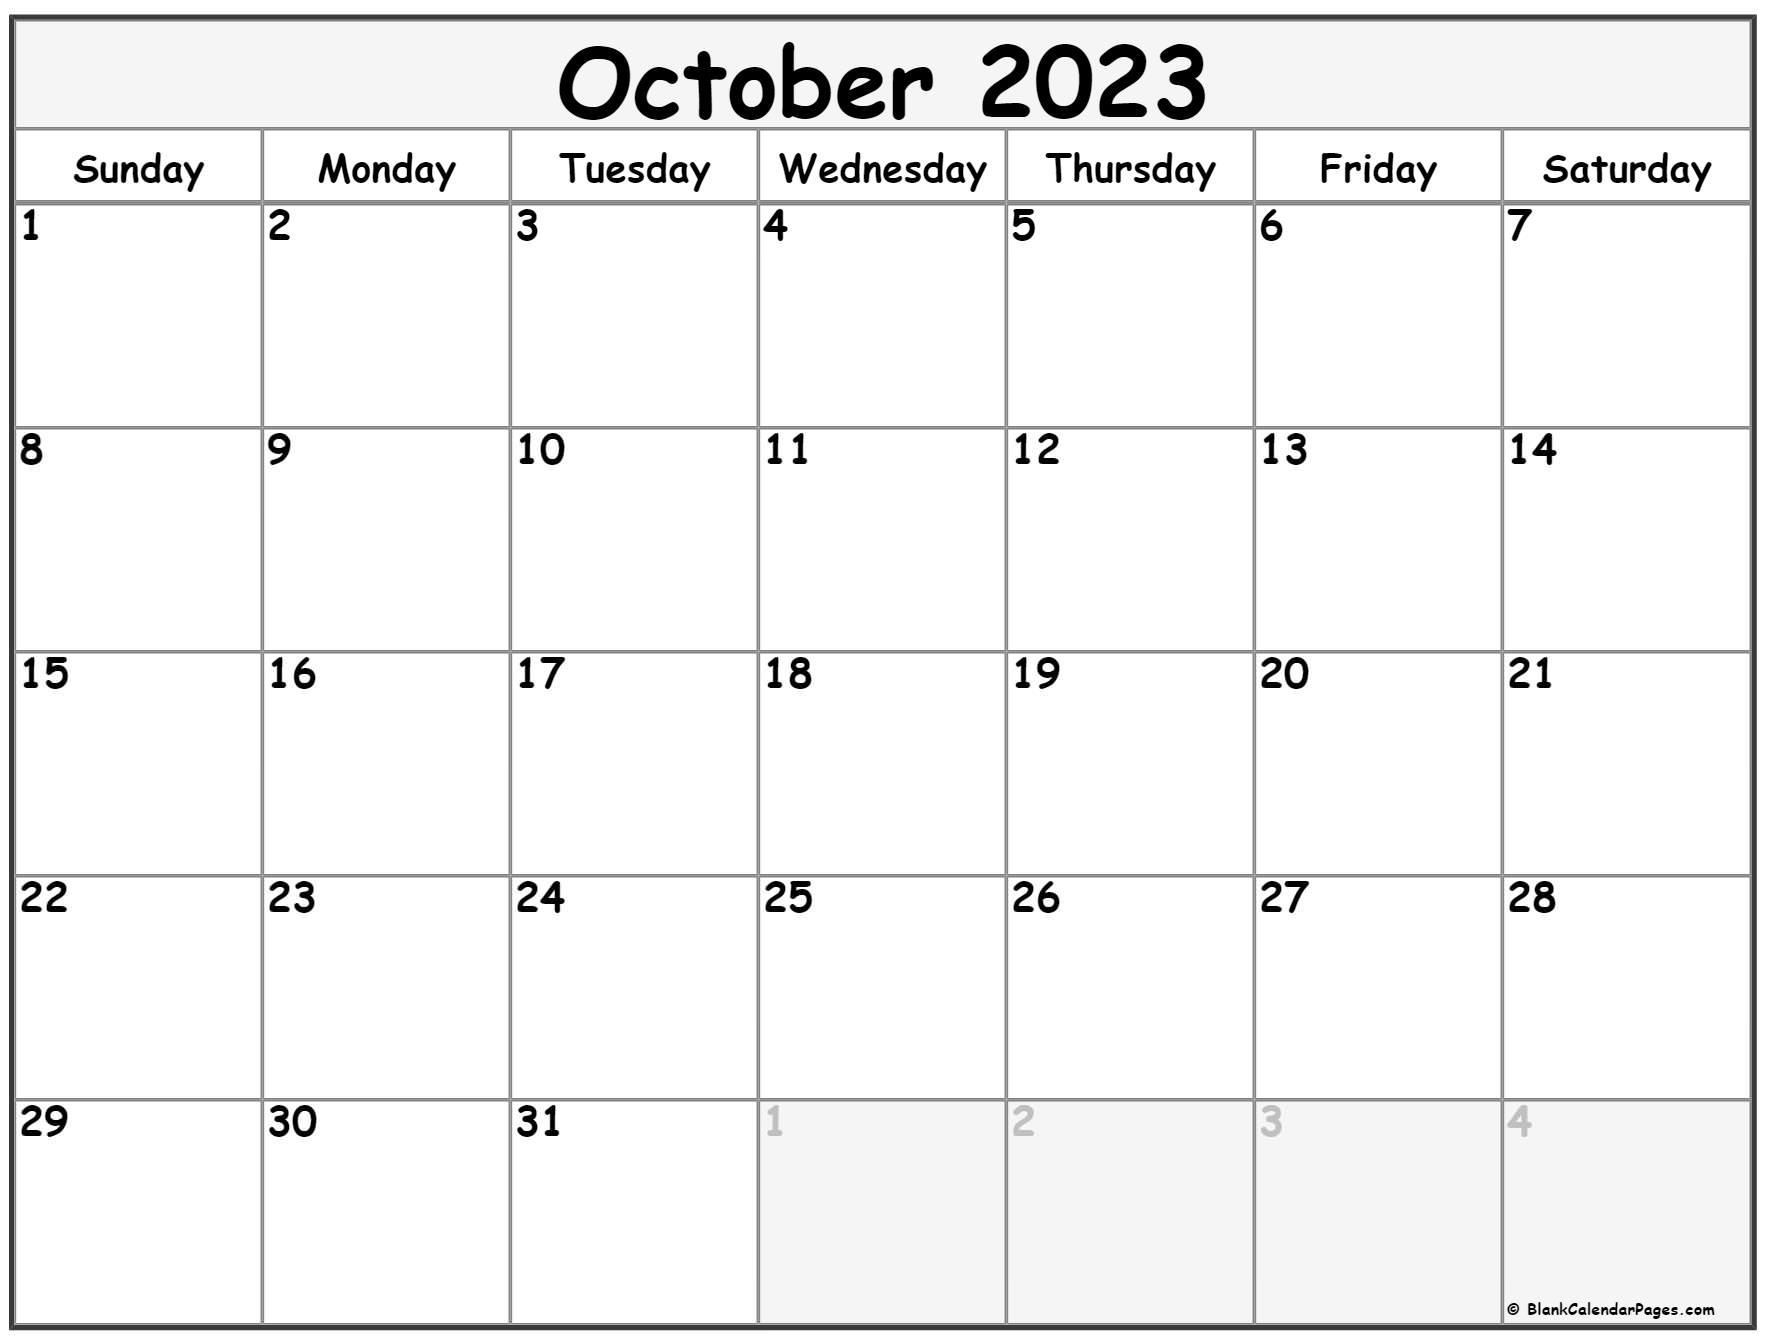 october 2023 calendar free printable calendar october 2023 calendar